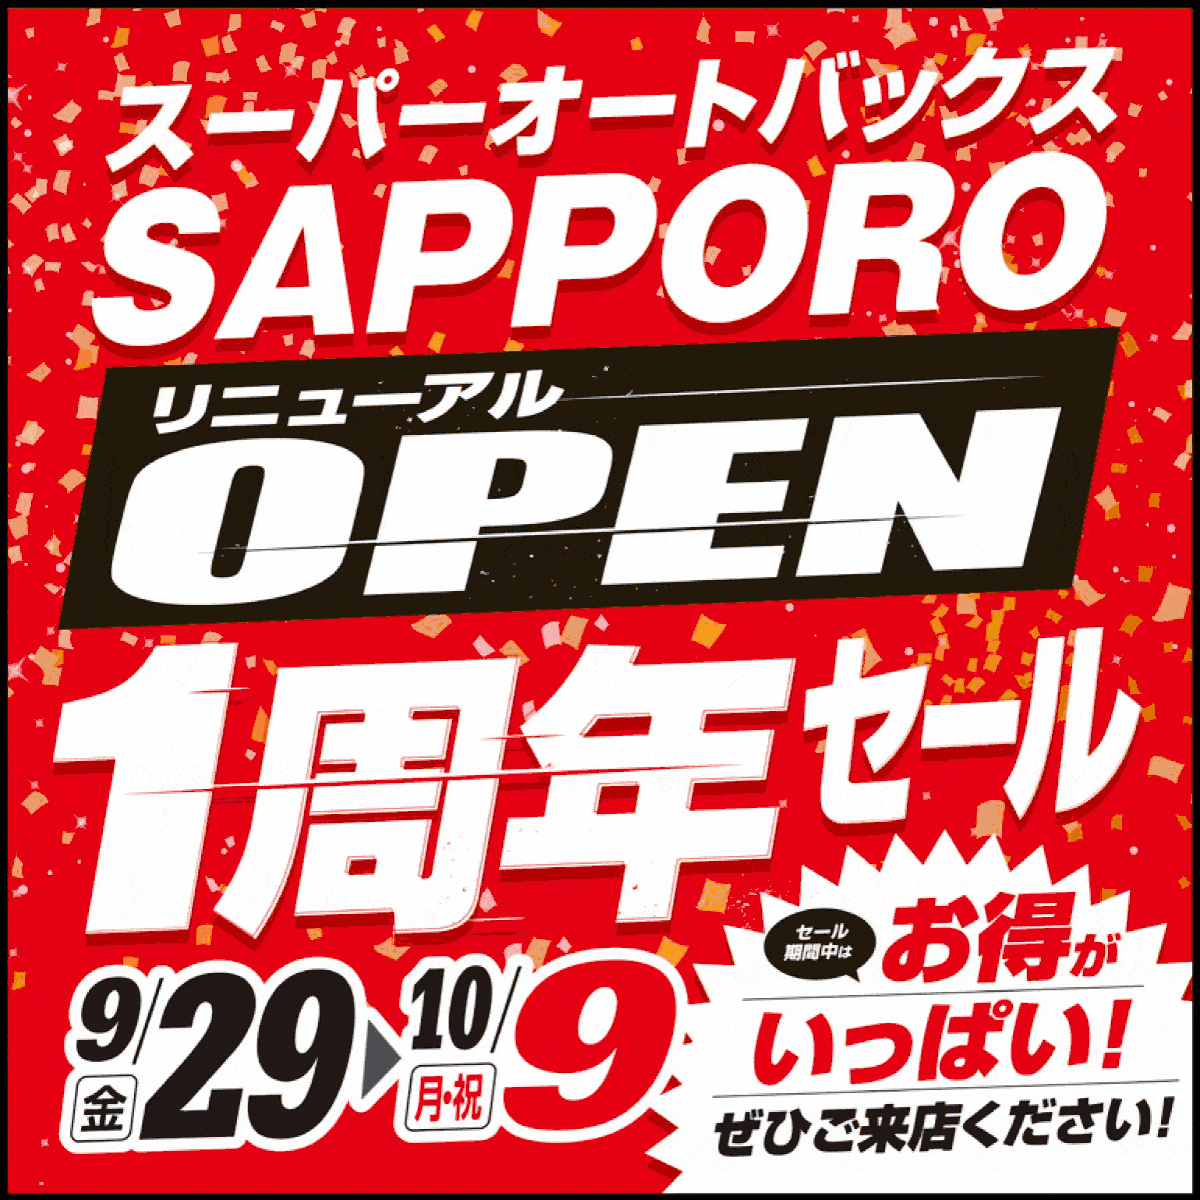 【9/29START】スーパーオートバックスSAPPORO リニューアル１周年セール!!【チラシ情報有り】